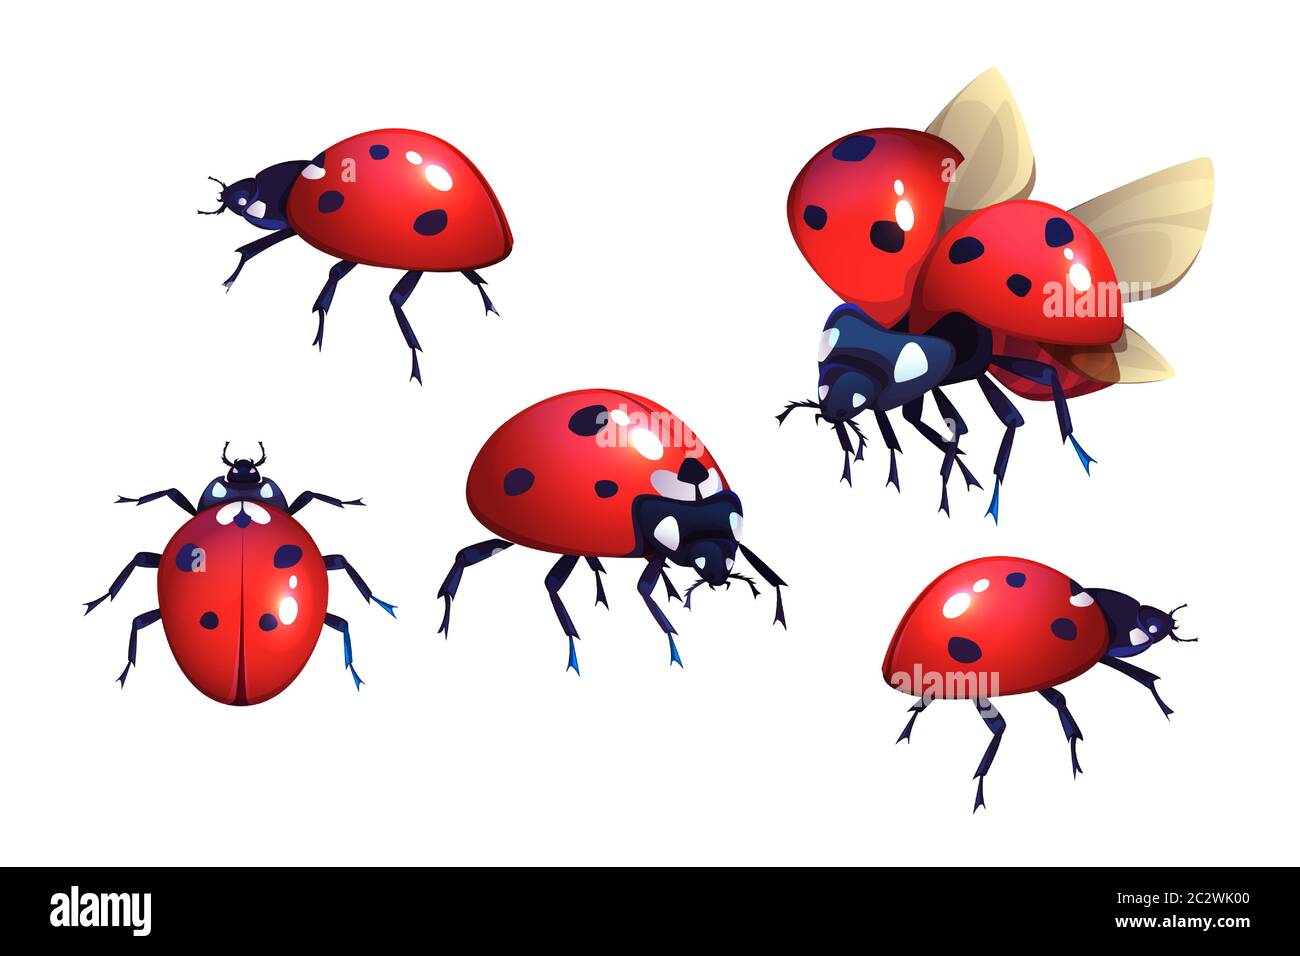 Coccinelle ou coccinelle, rouge avec des taches noires scarabée, insecte volant ailé ensemble de dessins animés réalistes illustrations vectorielles isolées sur fond blanc, coc Illustration de Vecteur